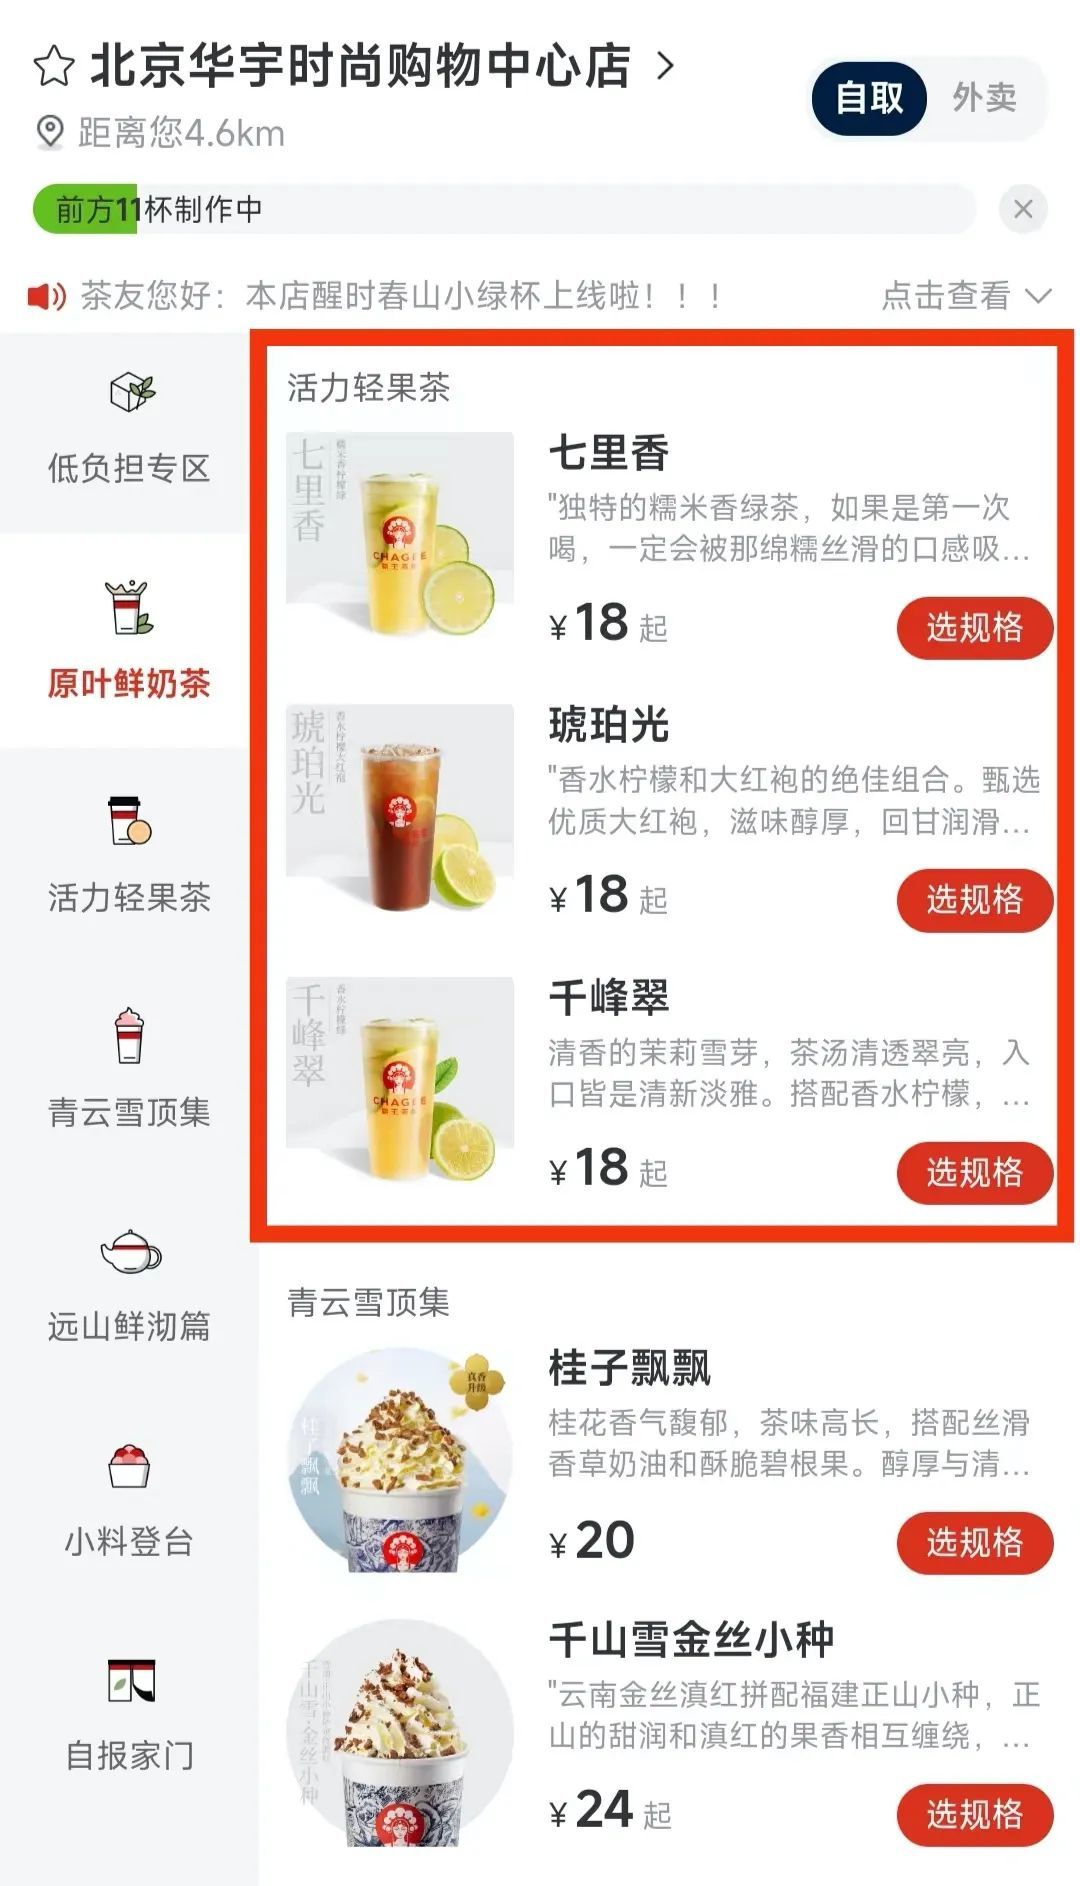 水果茶产品中仅有“柠檬茶”可售 霸王茶姬小程序截图